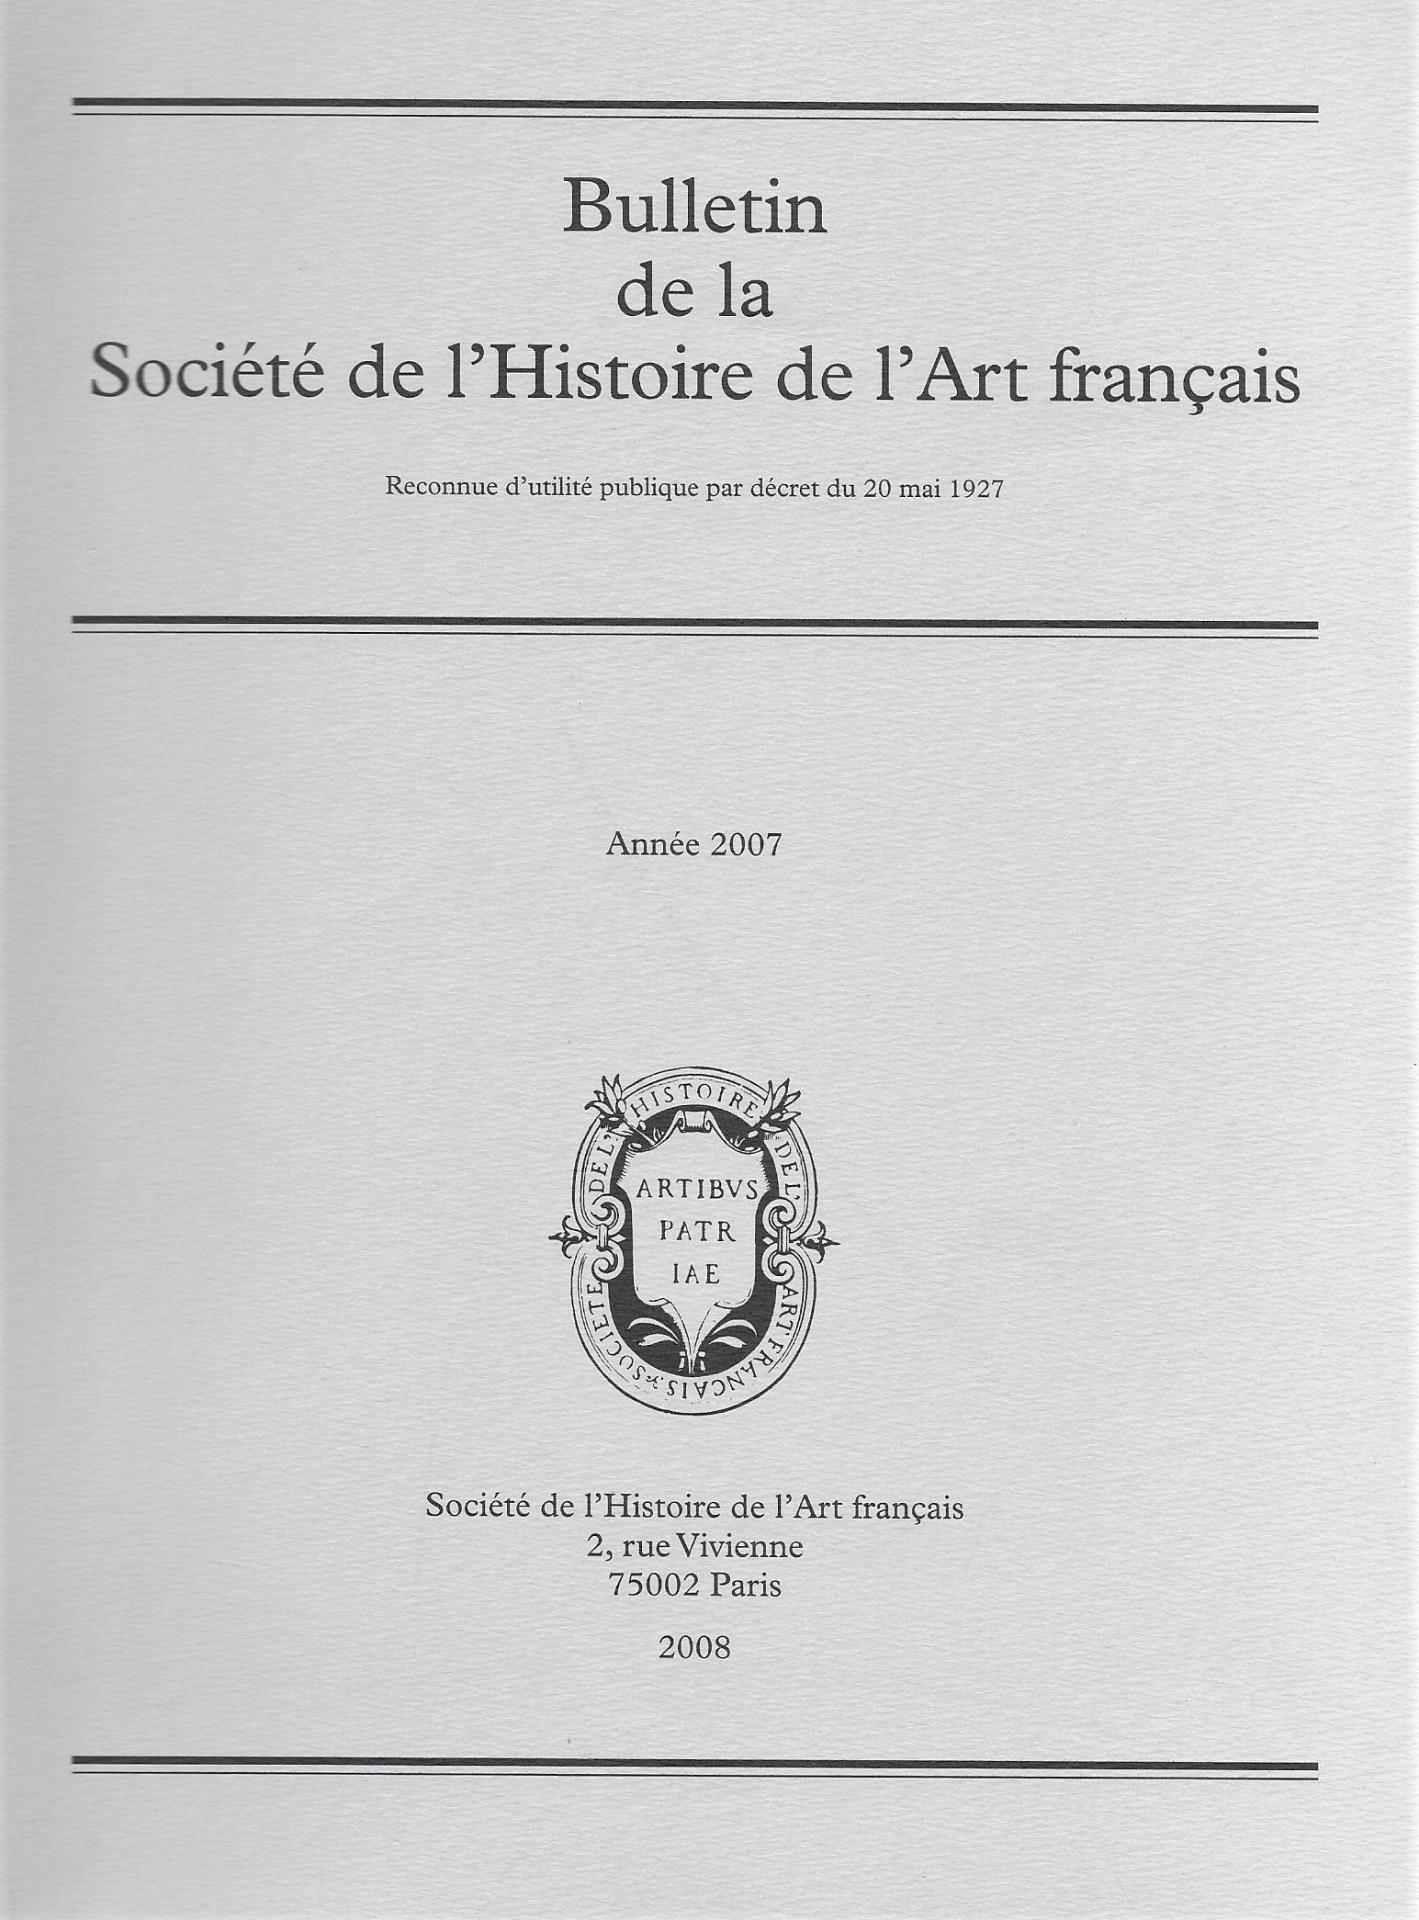 Bulletin de la Société de l'Histoire de l'Art français, année 2007, 2008